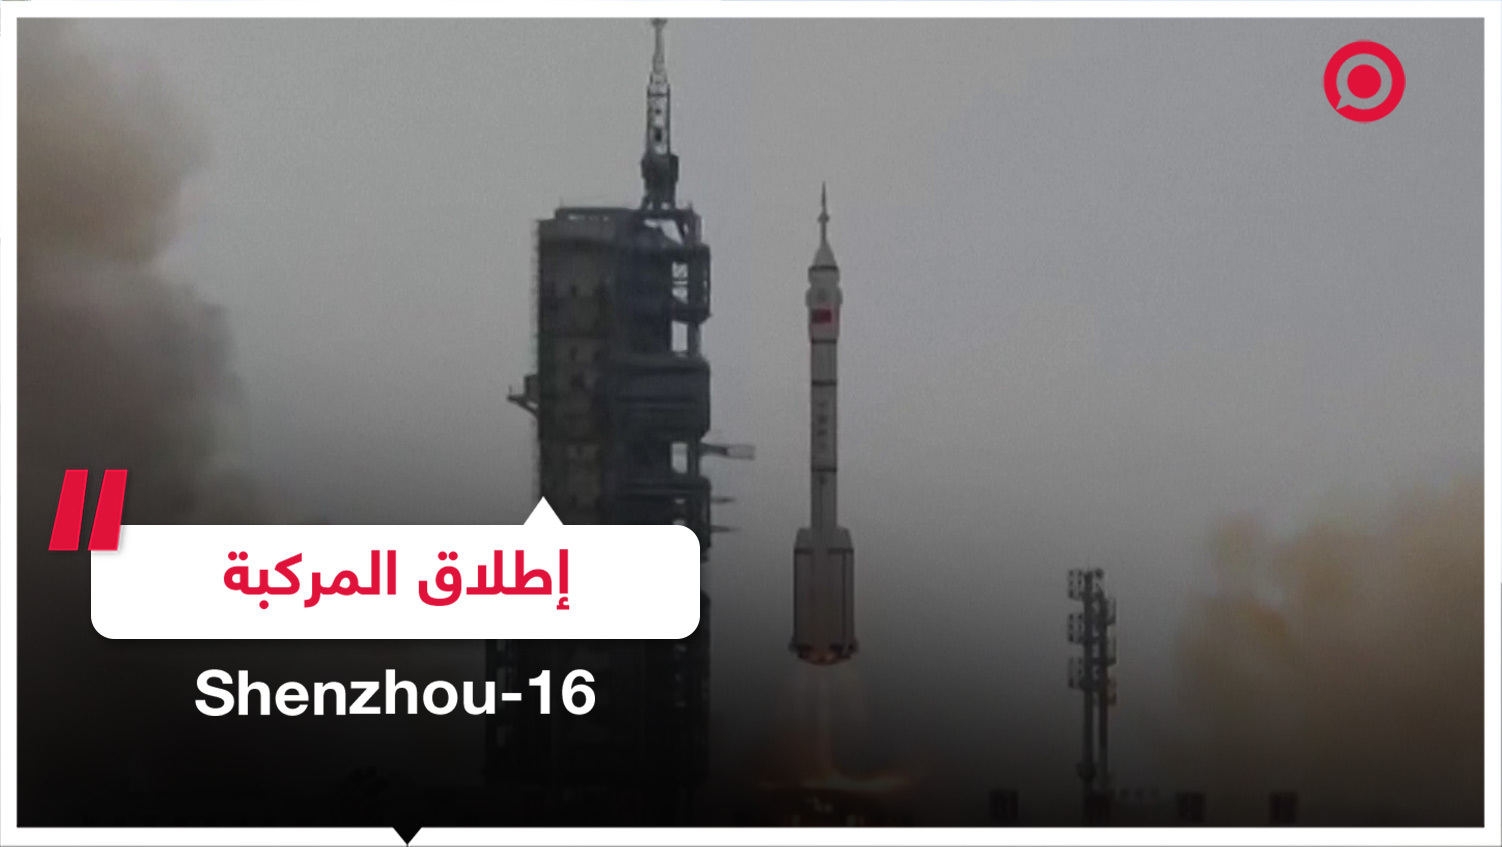 إطلاق رواد فضاء جدد إلى محطة الفضاء الصينية